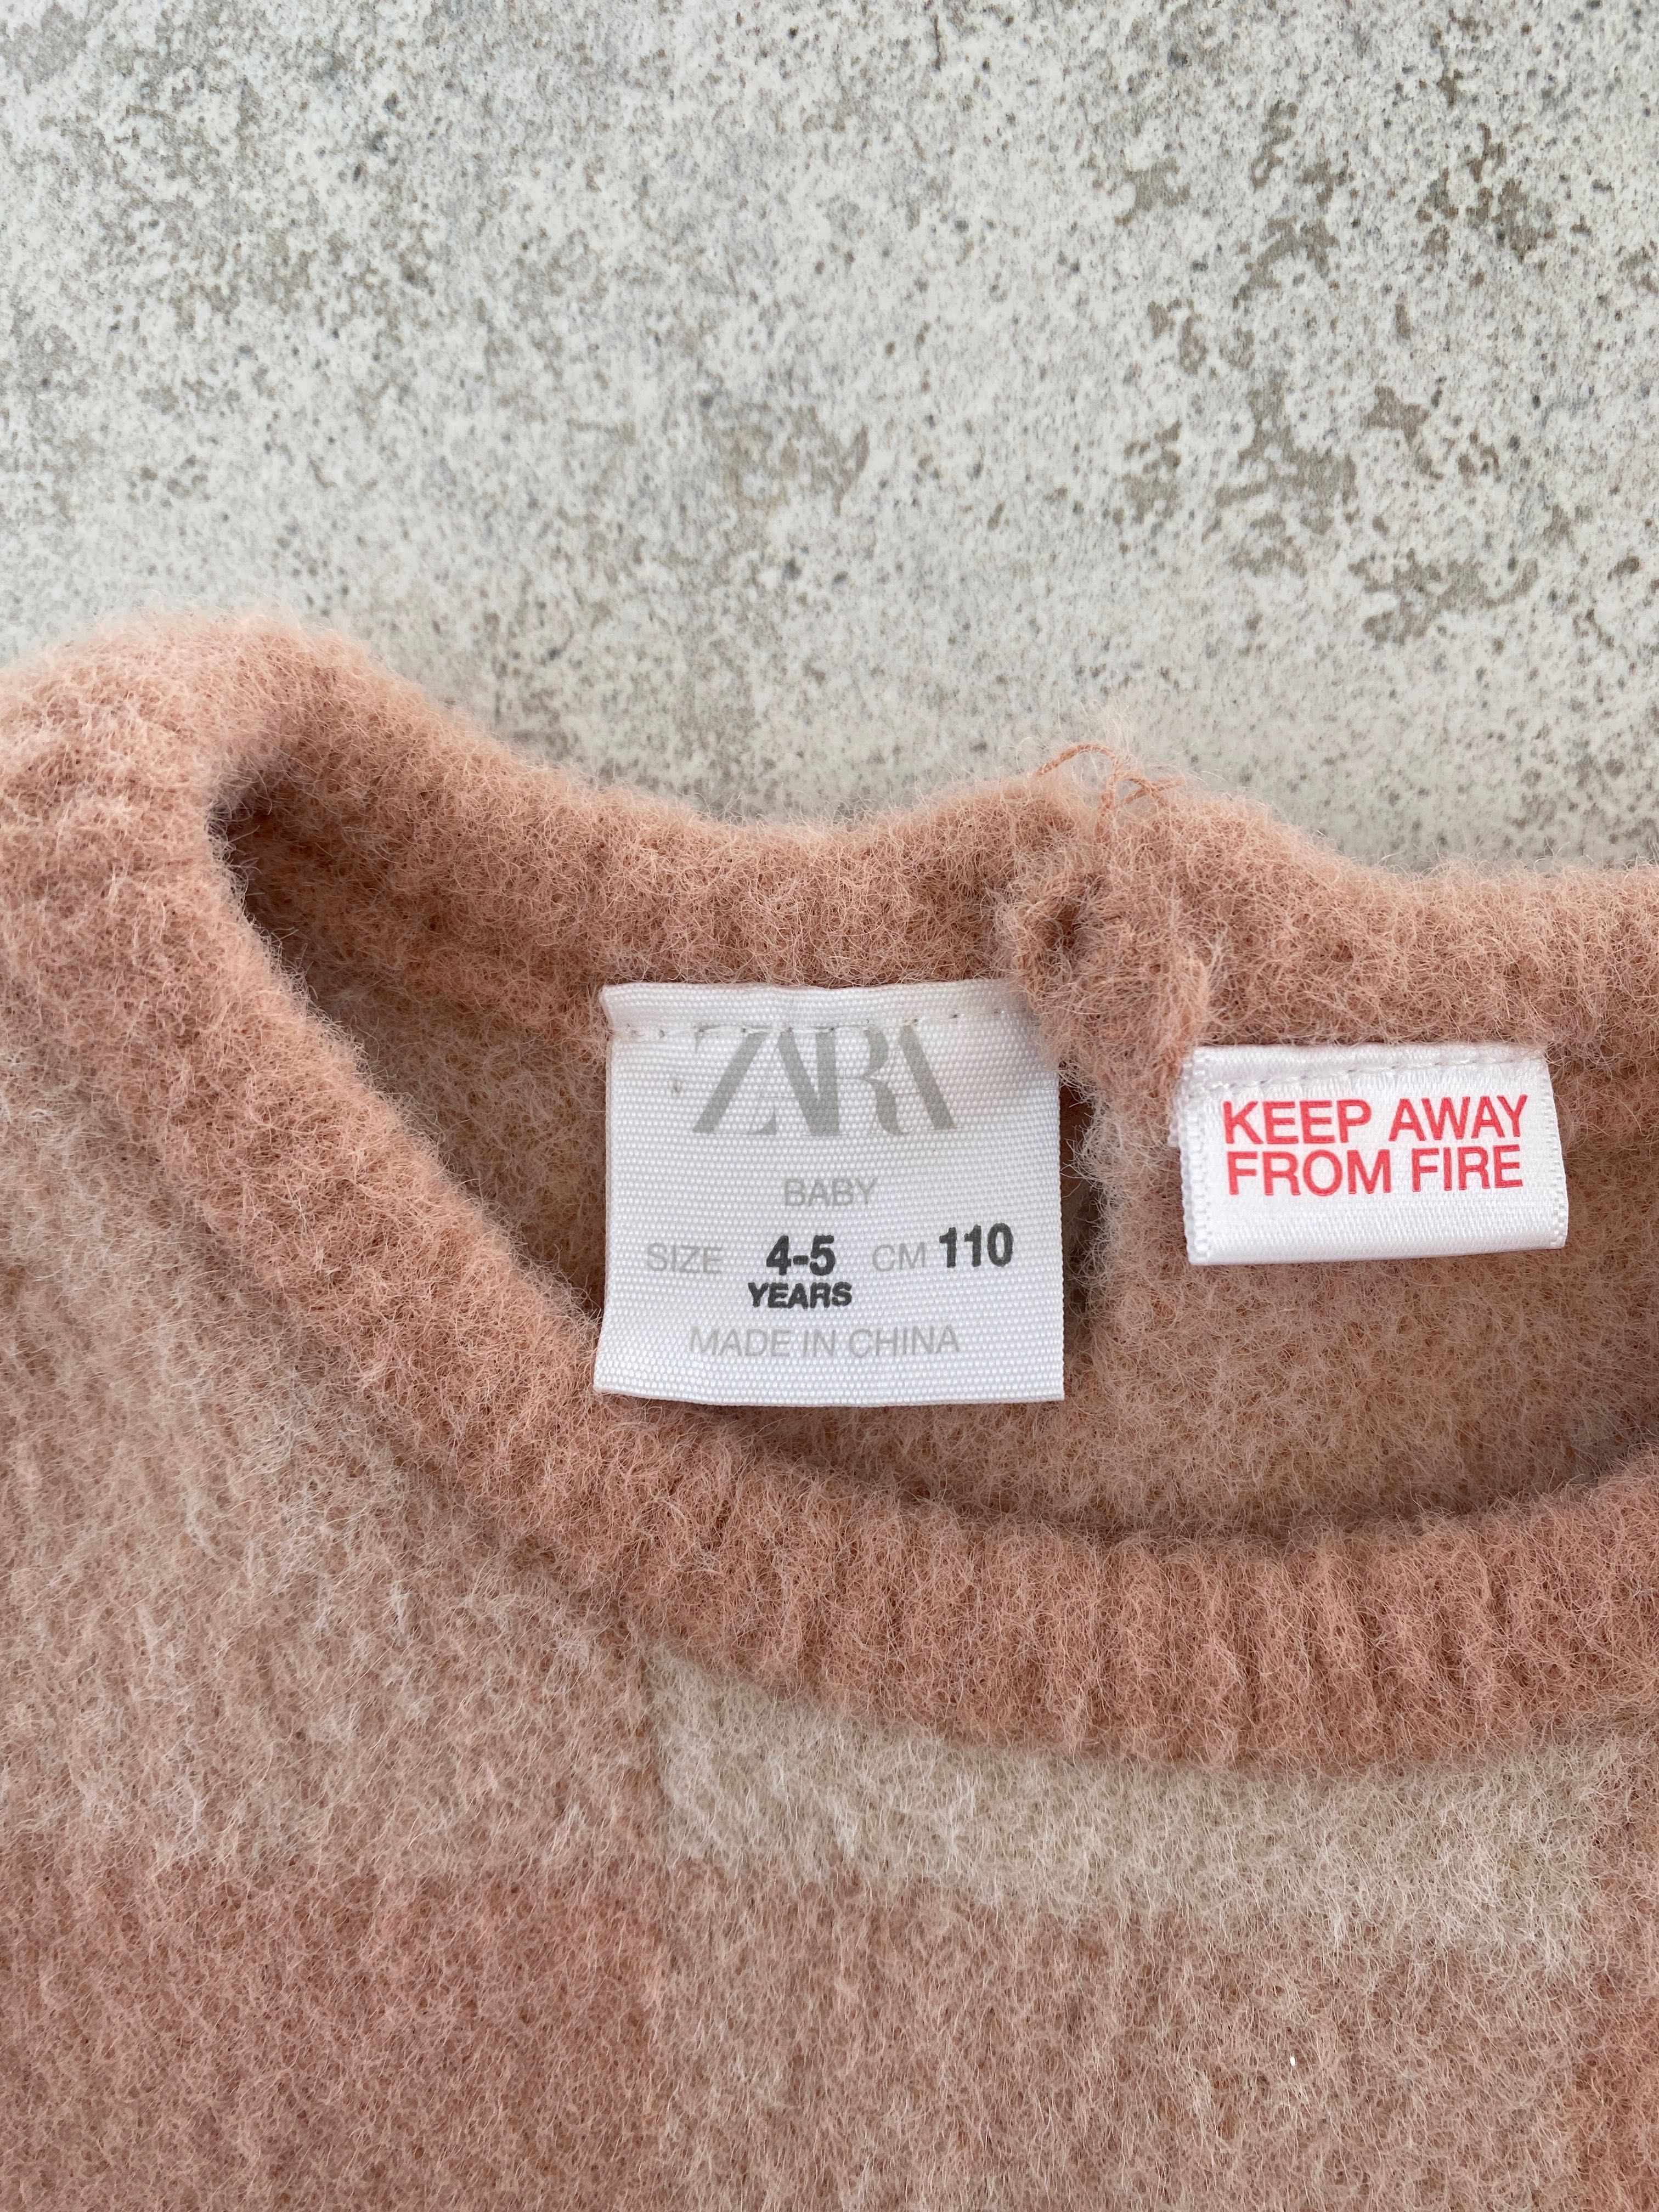 Zara, r. 110, sweter, jak nowy